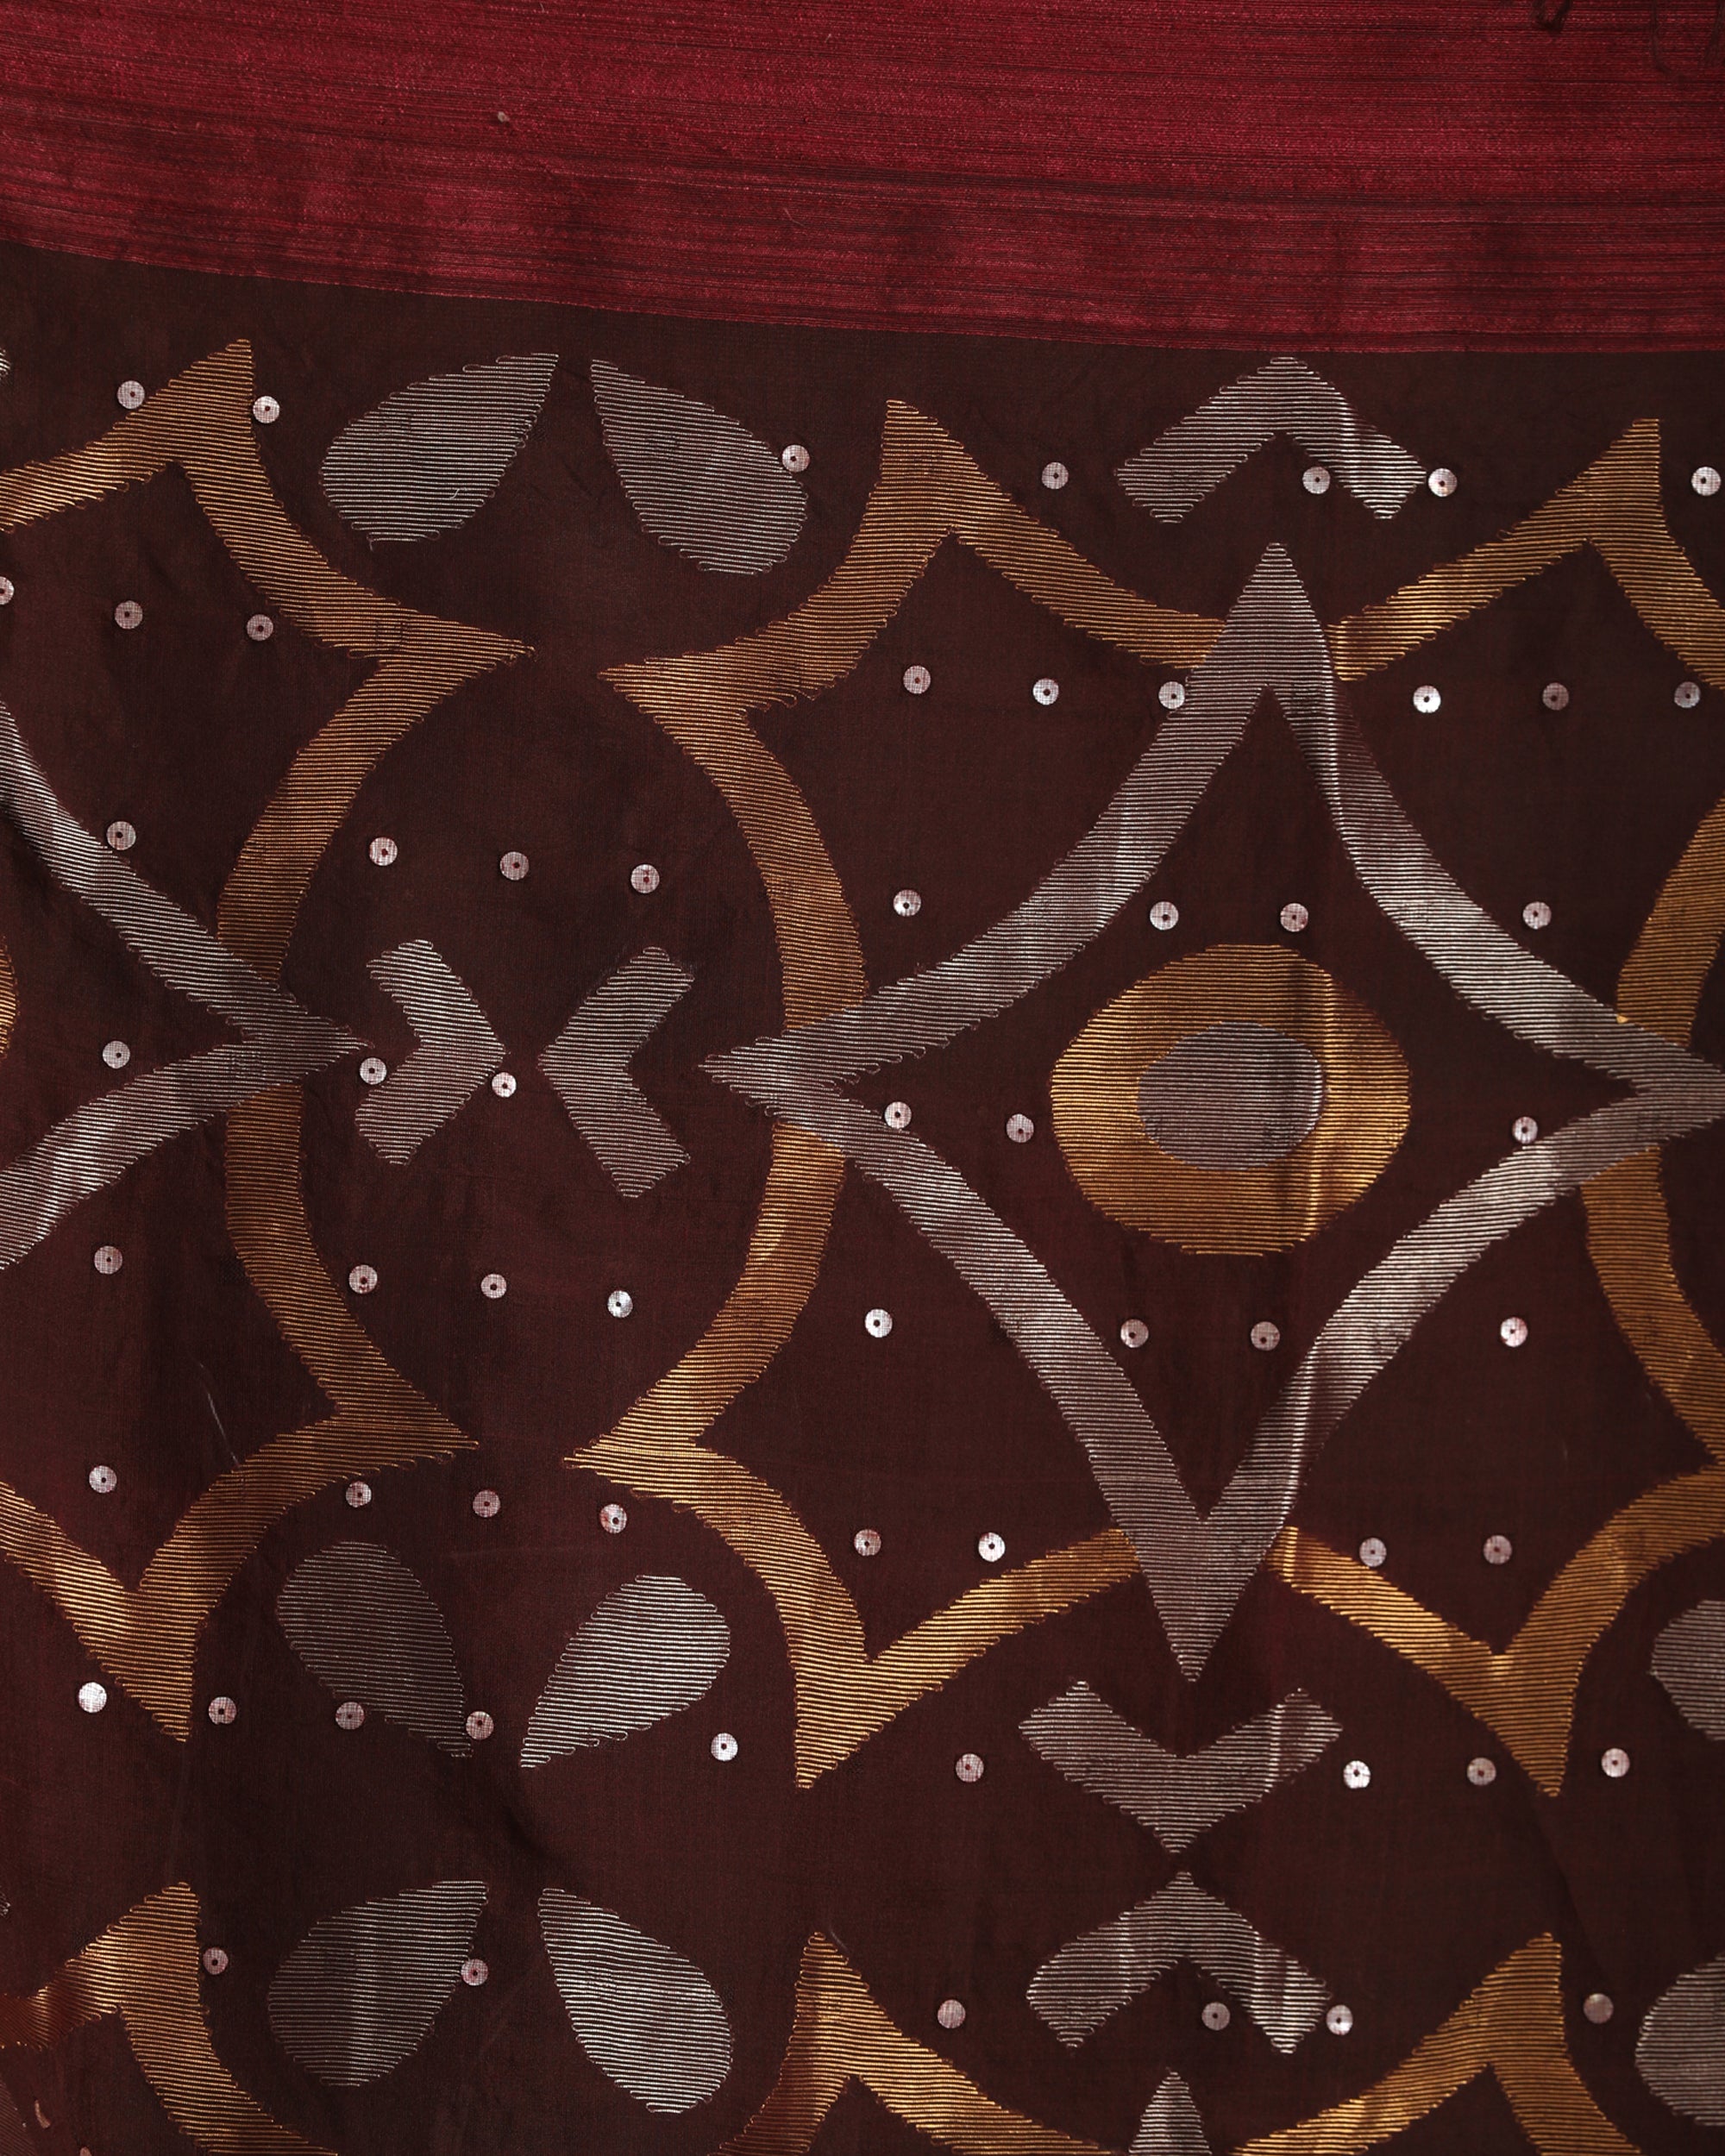 Women's Deep Maroon Matka Silk Handloom Traditional Sequin Jamdani Saree - Angoshobha